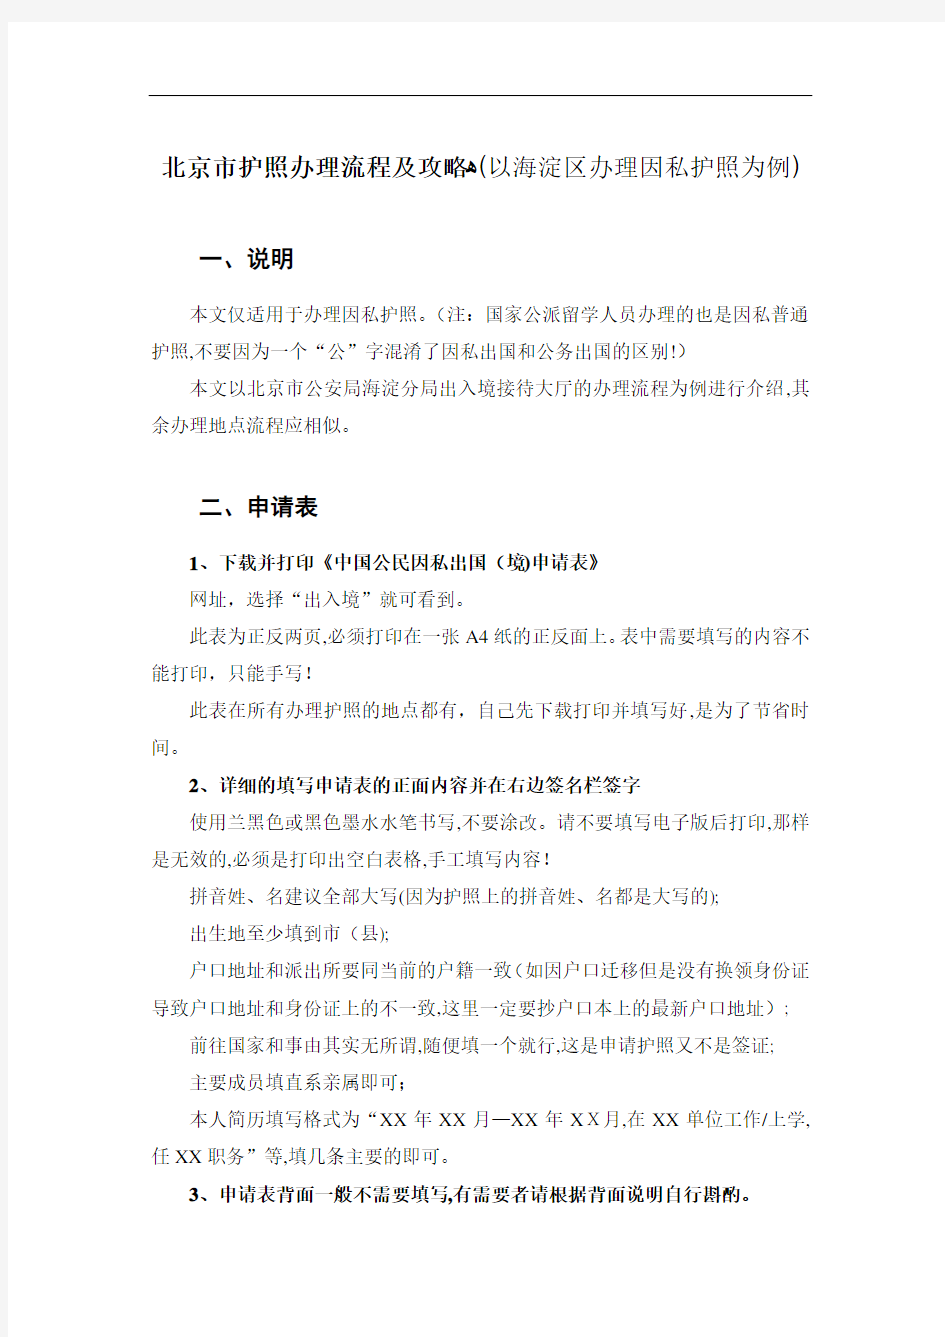 北京市护照办理流程及攻略(以海淀区办理因私护照为例)